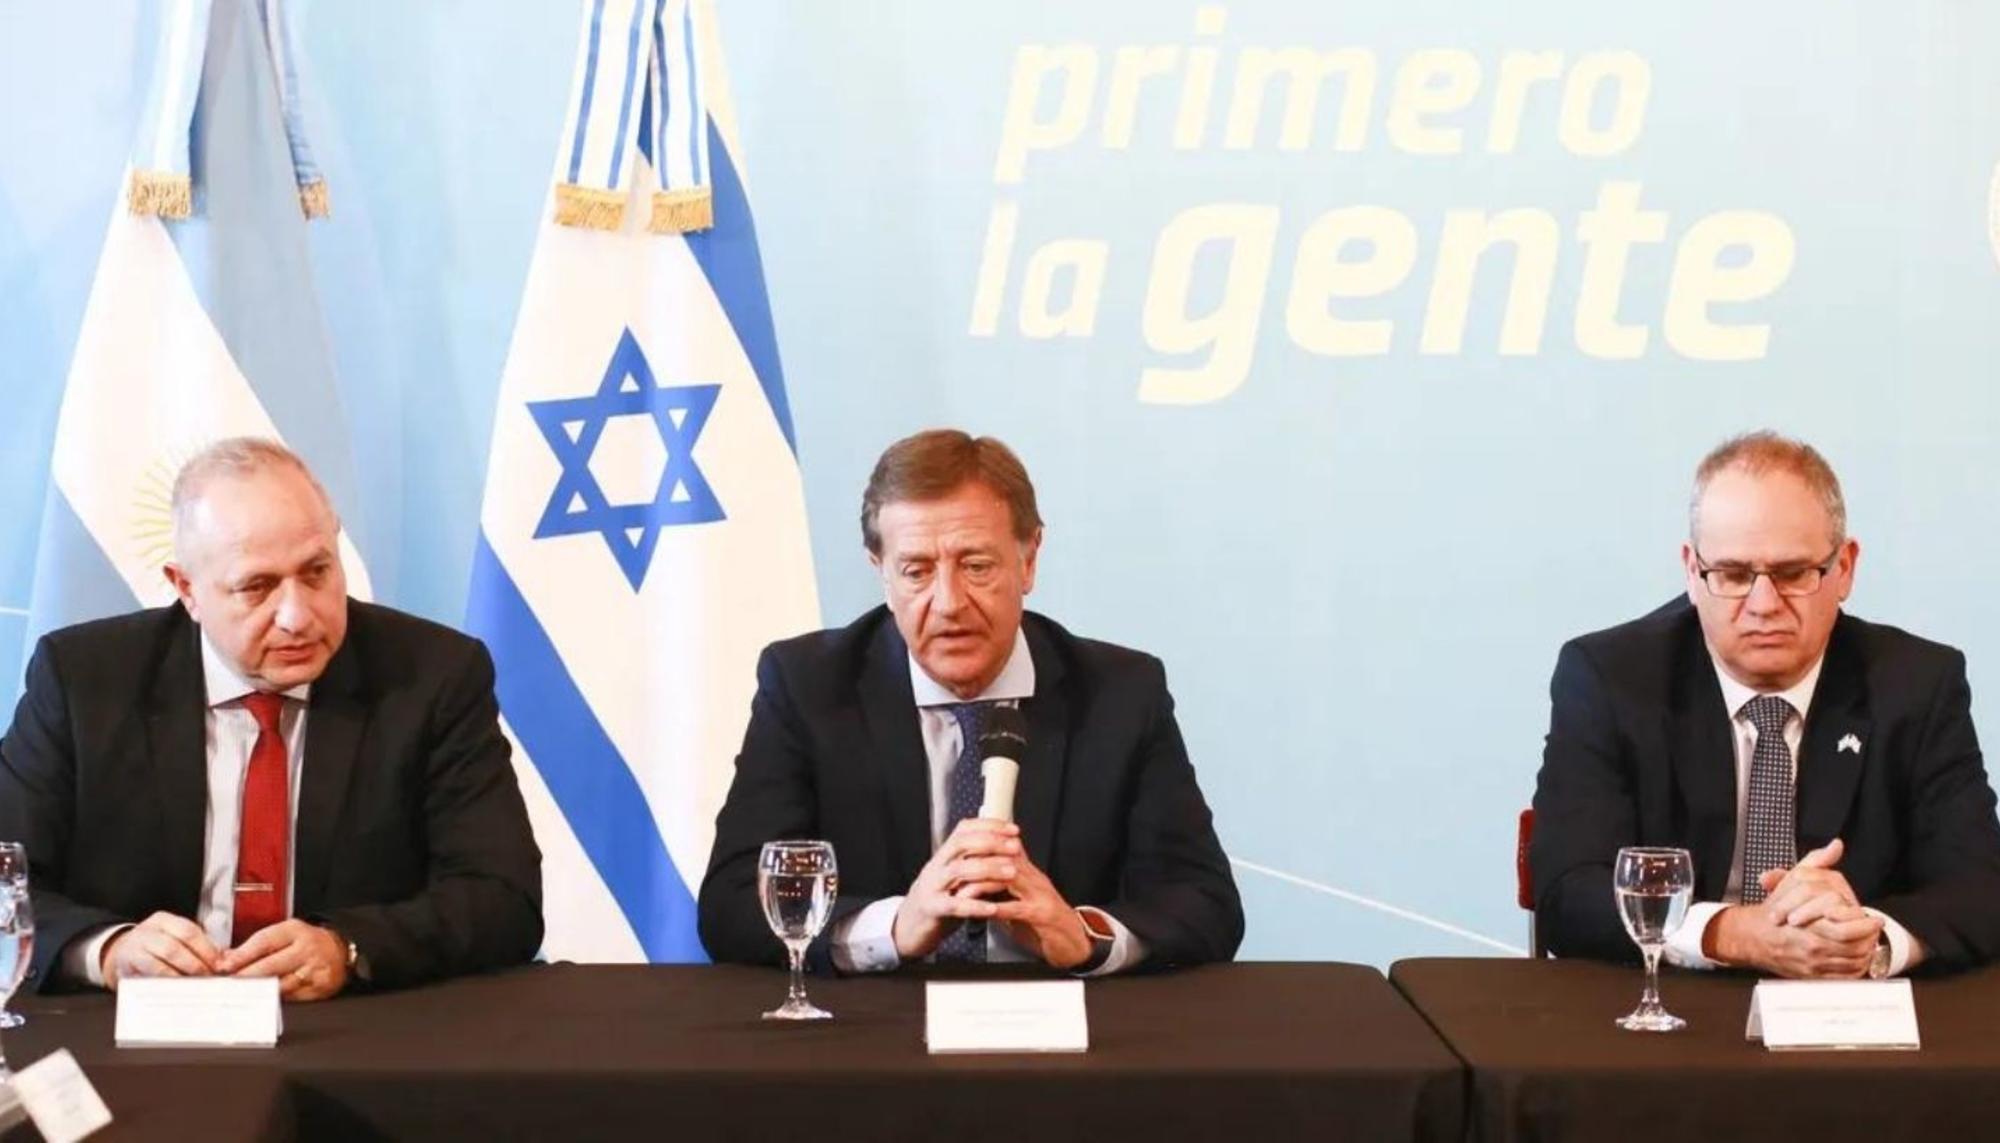 El gobernador de la provincia argentina de Mendoza, Rodolfo Suárez, presenta el acuerdo con Mekorot. Foto: Mario Vadillo